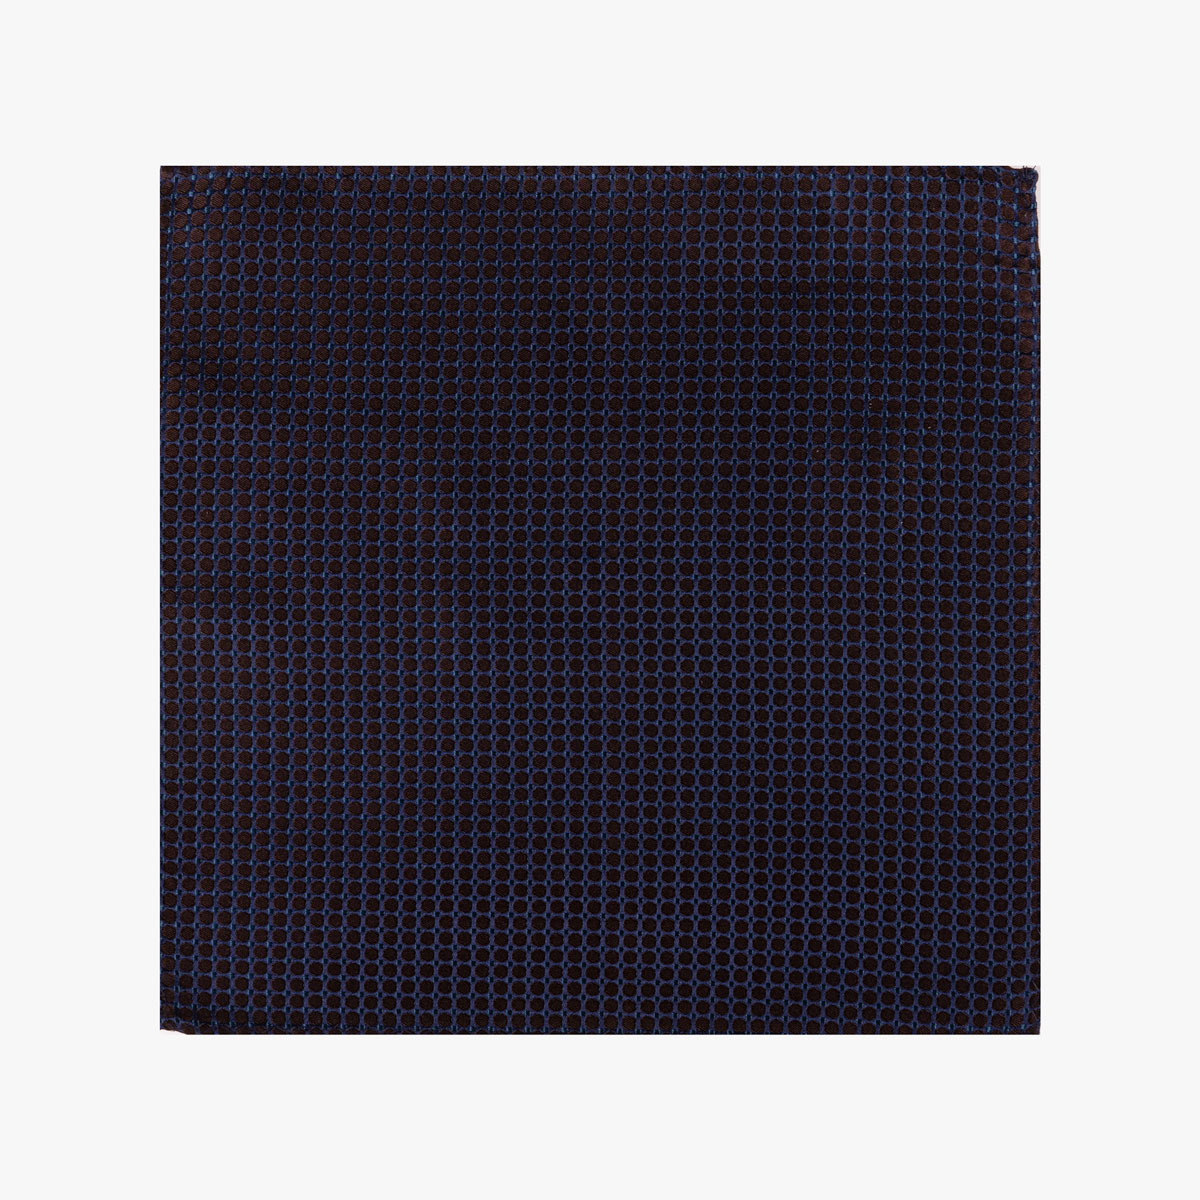 Einstecktuch mit geometrischem Muster in braun blau